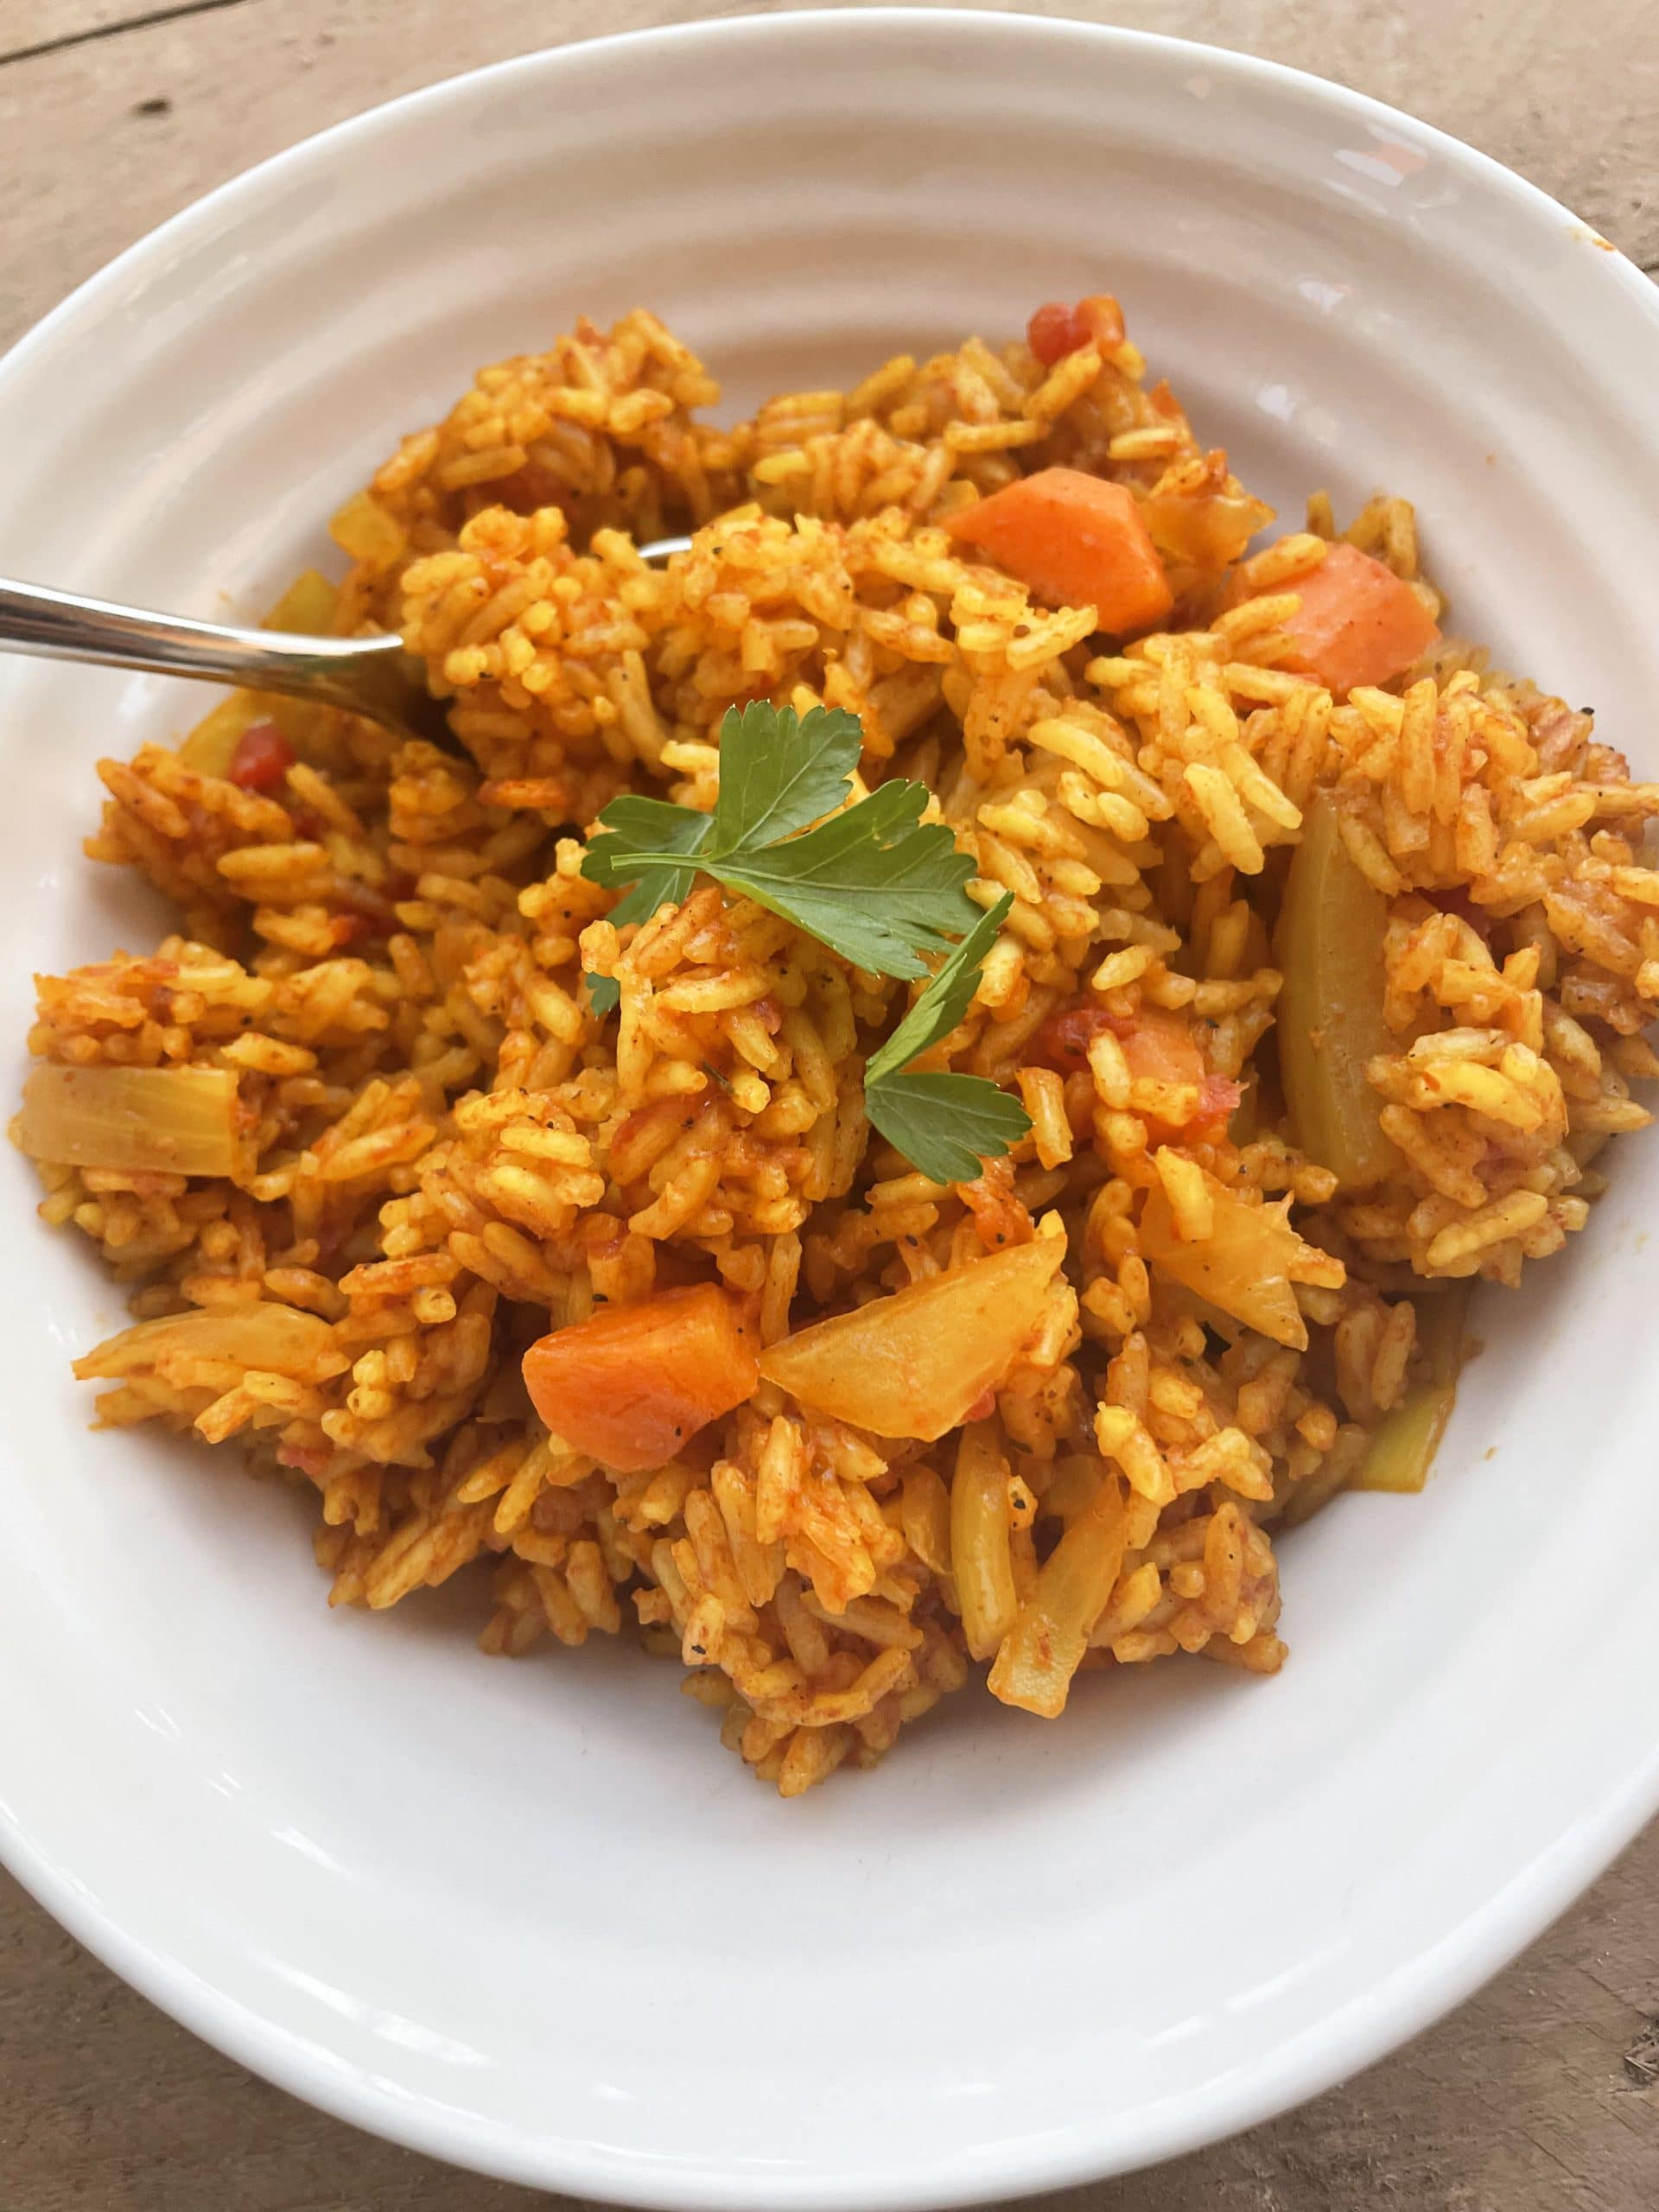 Tomato Rice (Fat Rice from Burkina Faso)